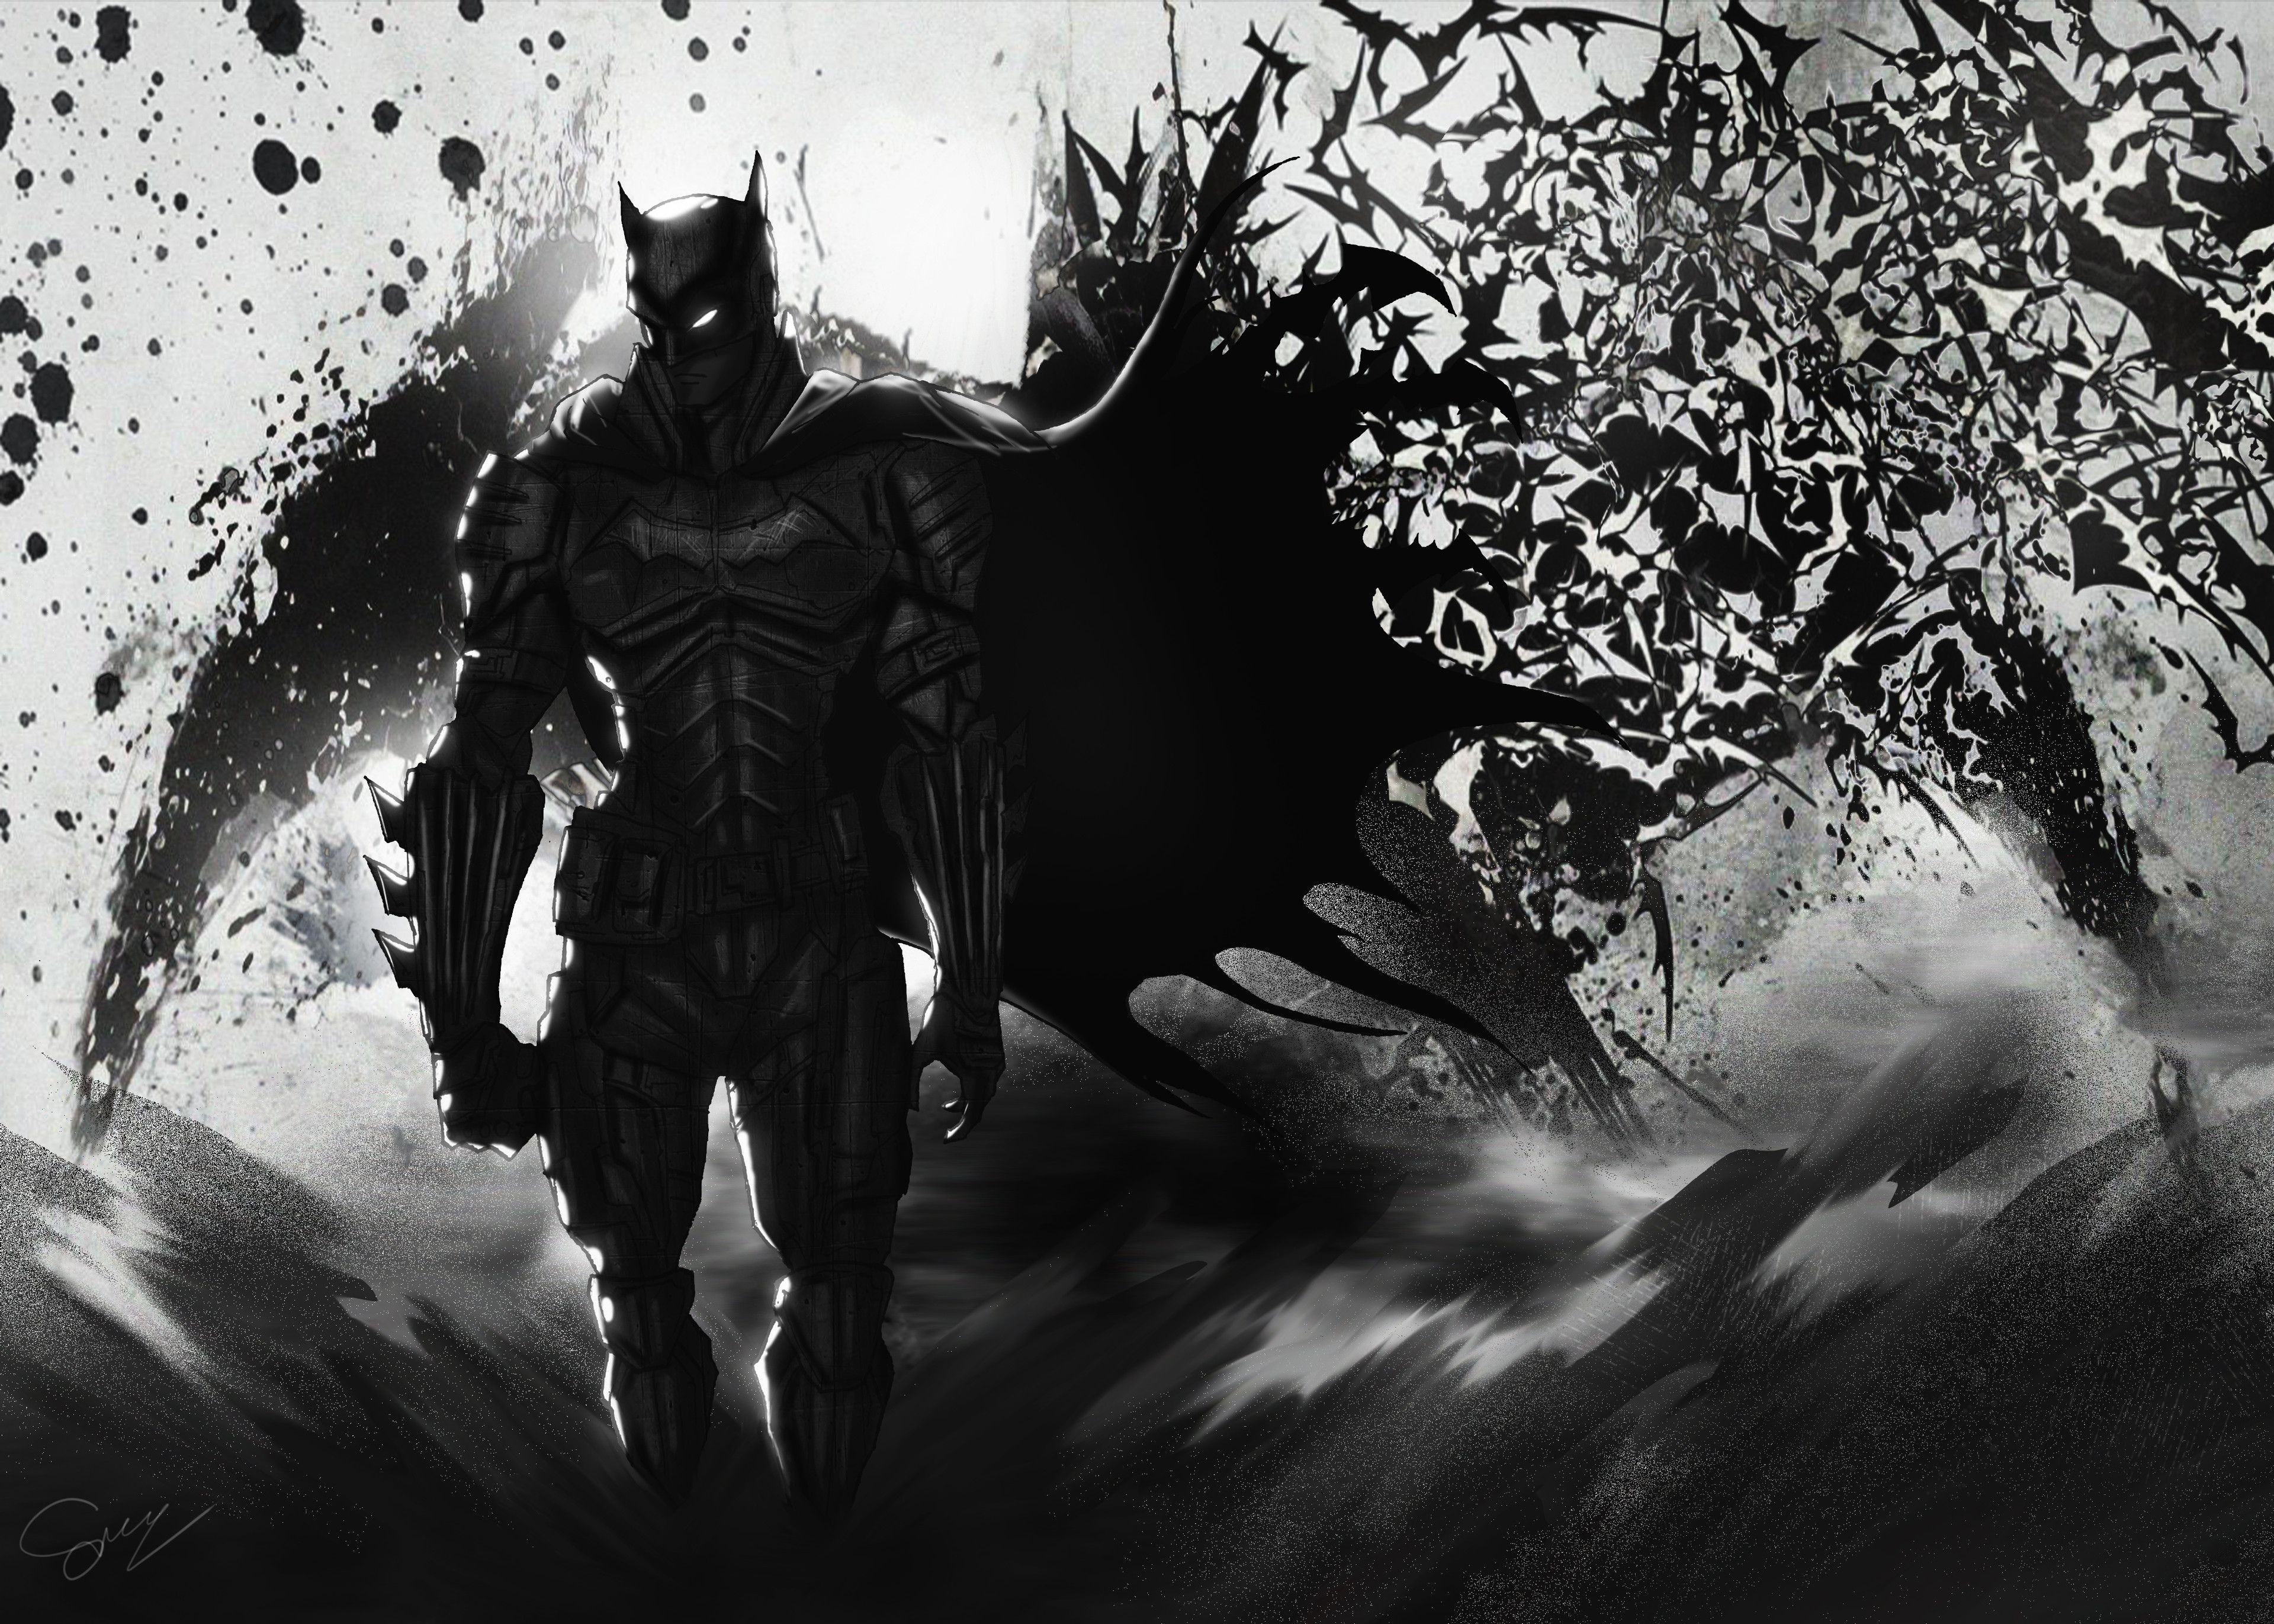 The Batman DC Darkness Wallpaper 4k HD ID:7096